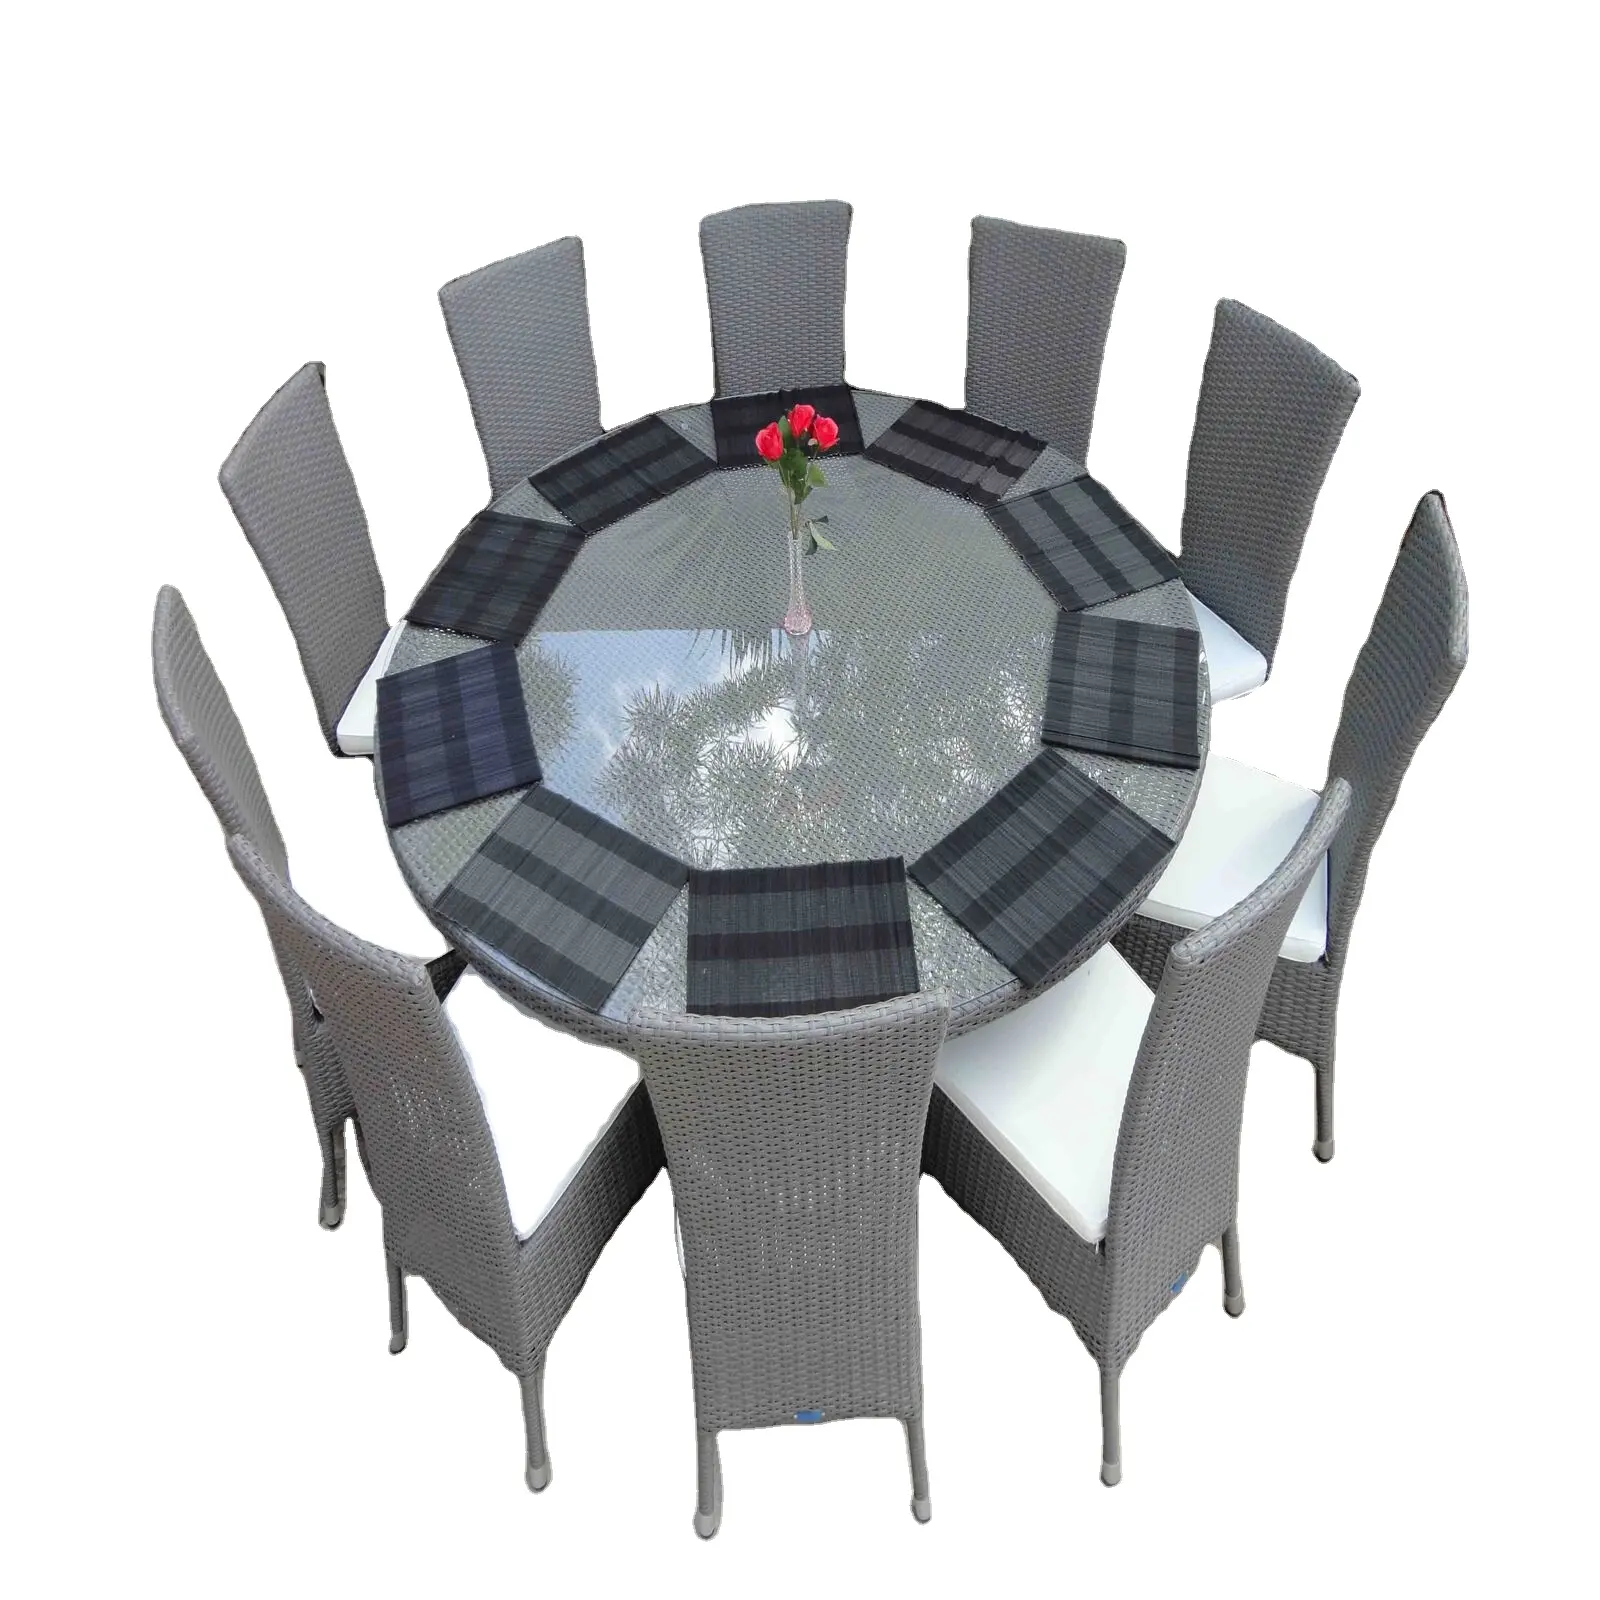 חילוף גן/מלון/וילה/resot מסודר עם עגול גדול חיצוני אוכל שולחן עם 10 מושבים אשר הוא מושלם